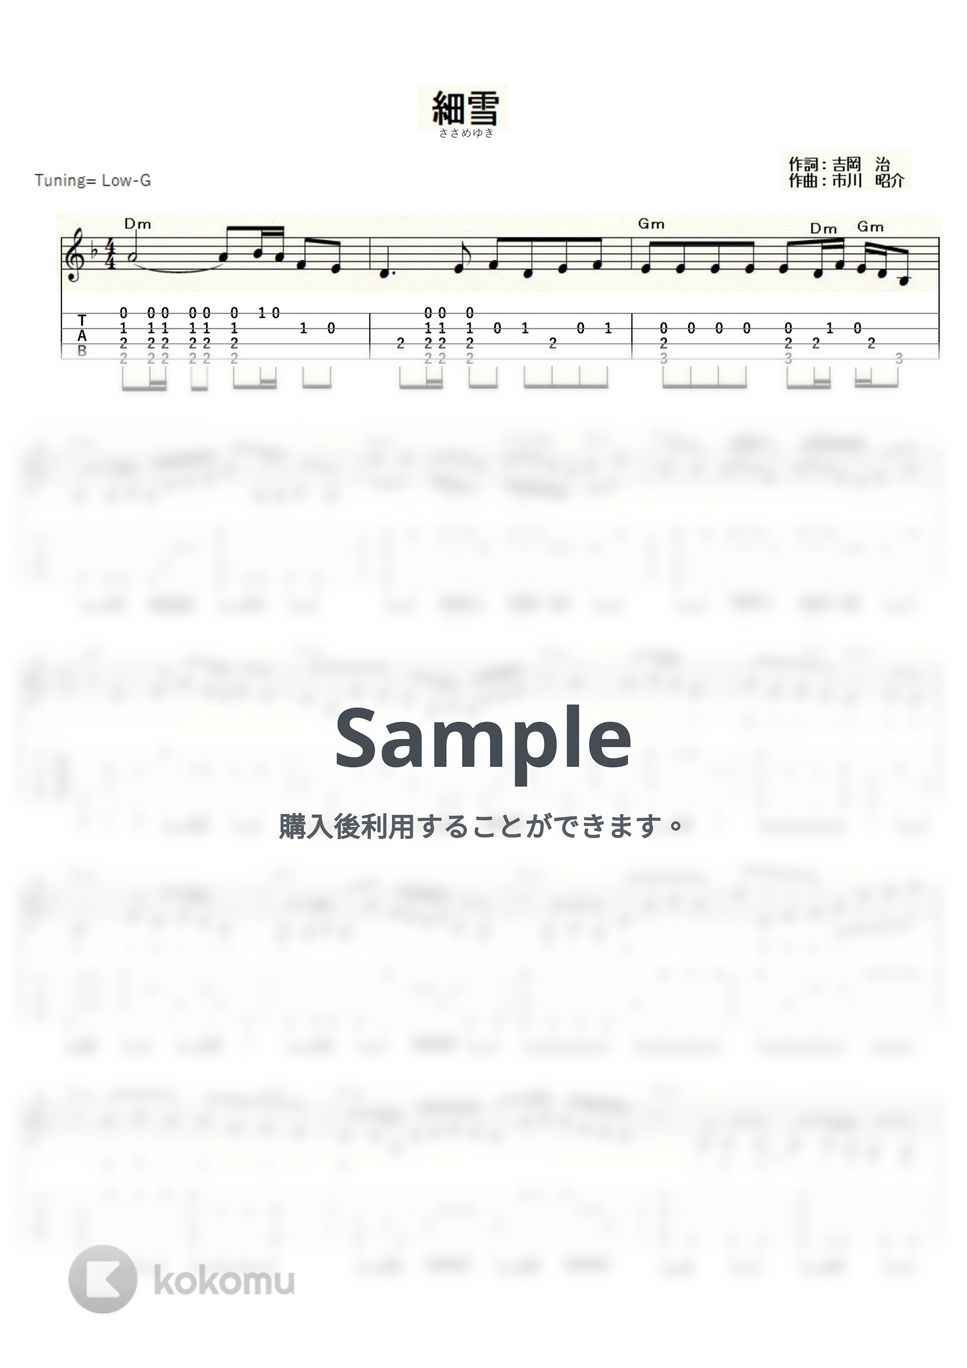 五木ひろし - 細雪 (ｳｸﾚﾚｿﾛ/Low-G/中級) by ukulelepapa